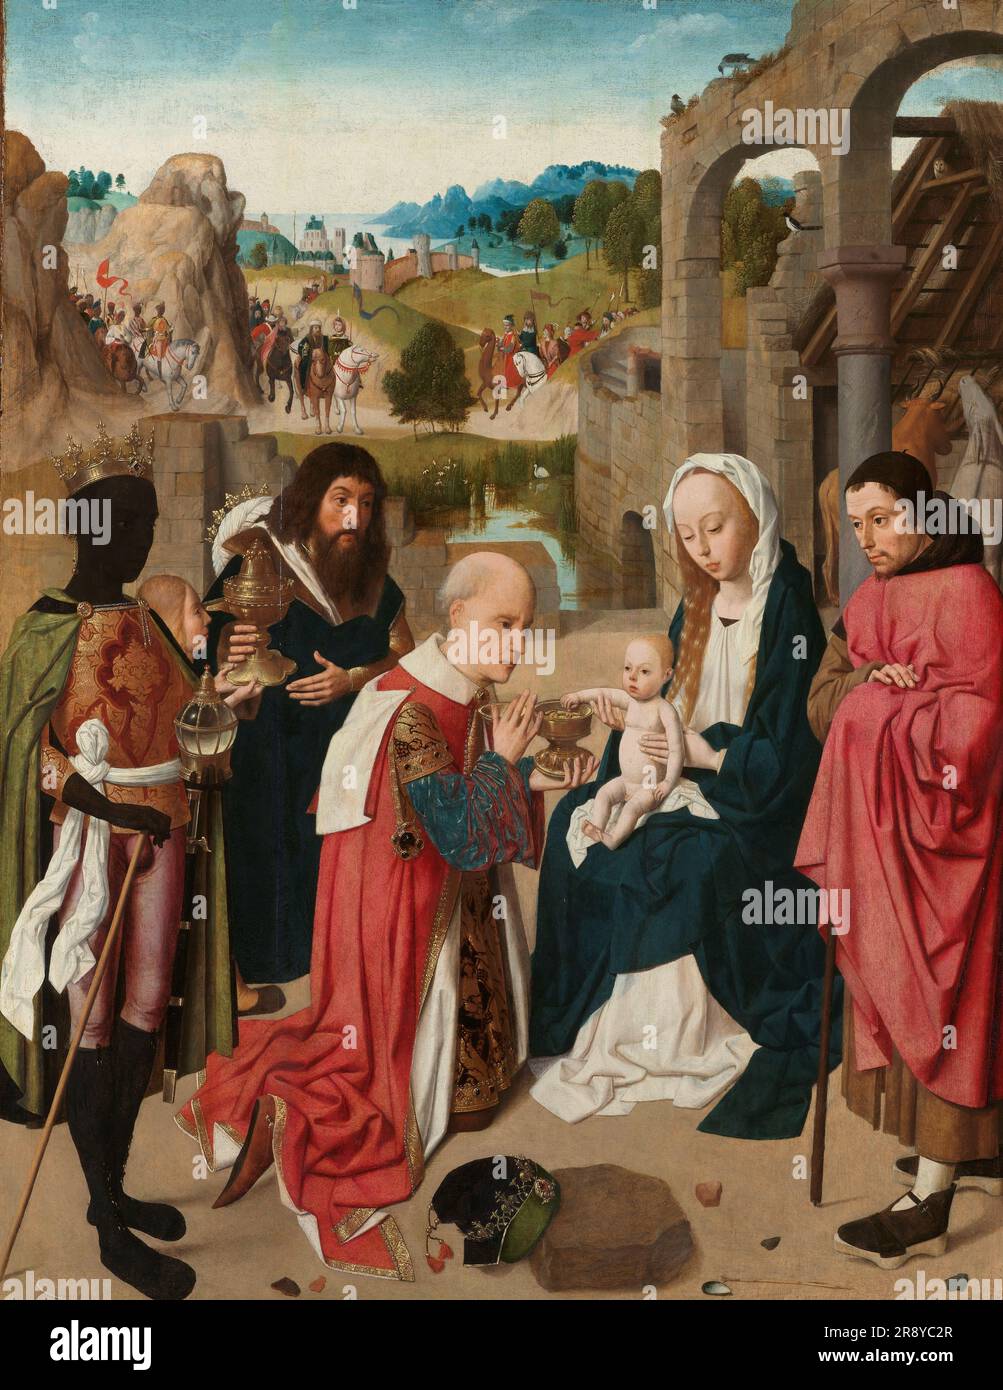 L'Aadoration des Magi, c.1480-c.1485. Autre titre(s): L'adoration des Magi. Les trois rois qui présentent leurs cadeaux occupent le premier plan de l'adoration d'Amsterdam. Le Christ enfant, assis sur les genoux de la Vierge&#x2019;s, étend son bras vers le roi caspar, le plus ancien, à genoux, qui lui offre un gobelet rempli de pièces d'or. Les deux autres rois se trouvent derrière Caspar dans le panneau d'Amsterdam. Melchior, aux cheveux longs et sombres et à la barbe, tient un calice d'or dans sa main droite, tandis que le roi Balthazar noir a un gobelet en cristal. À partir de la fin du Moyen âge, les trois rois W Banque D'Images